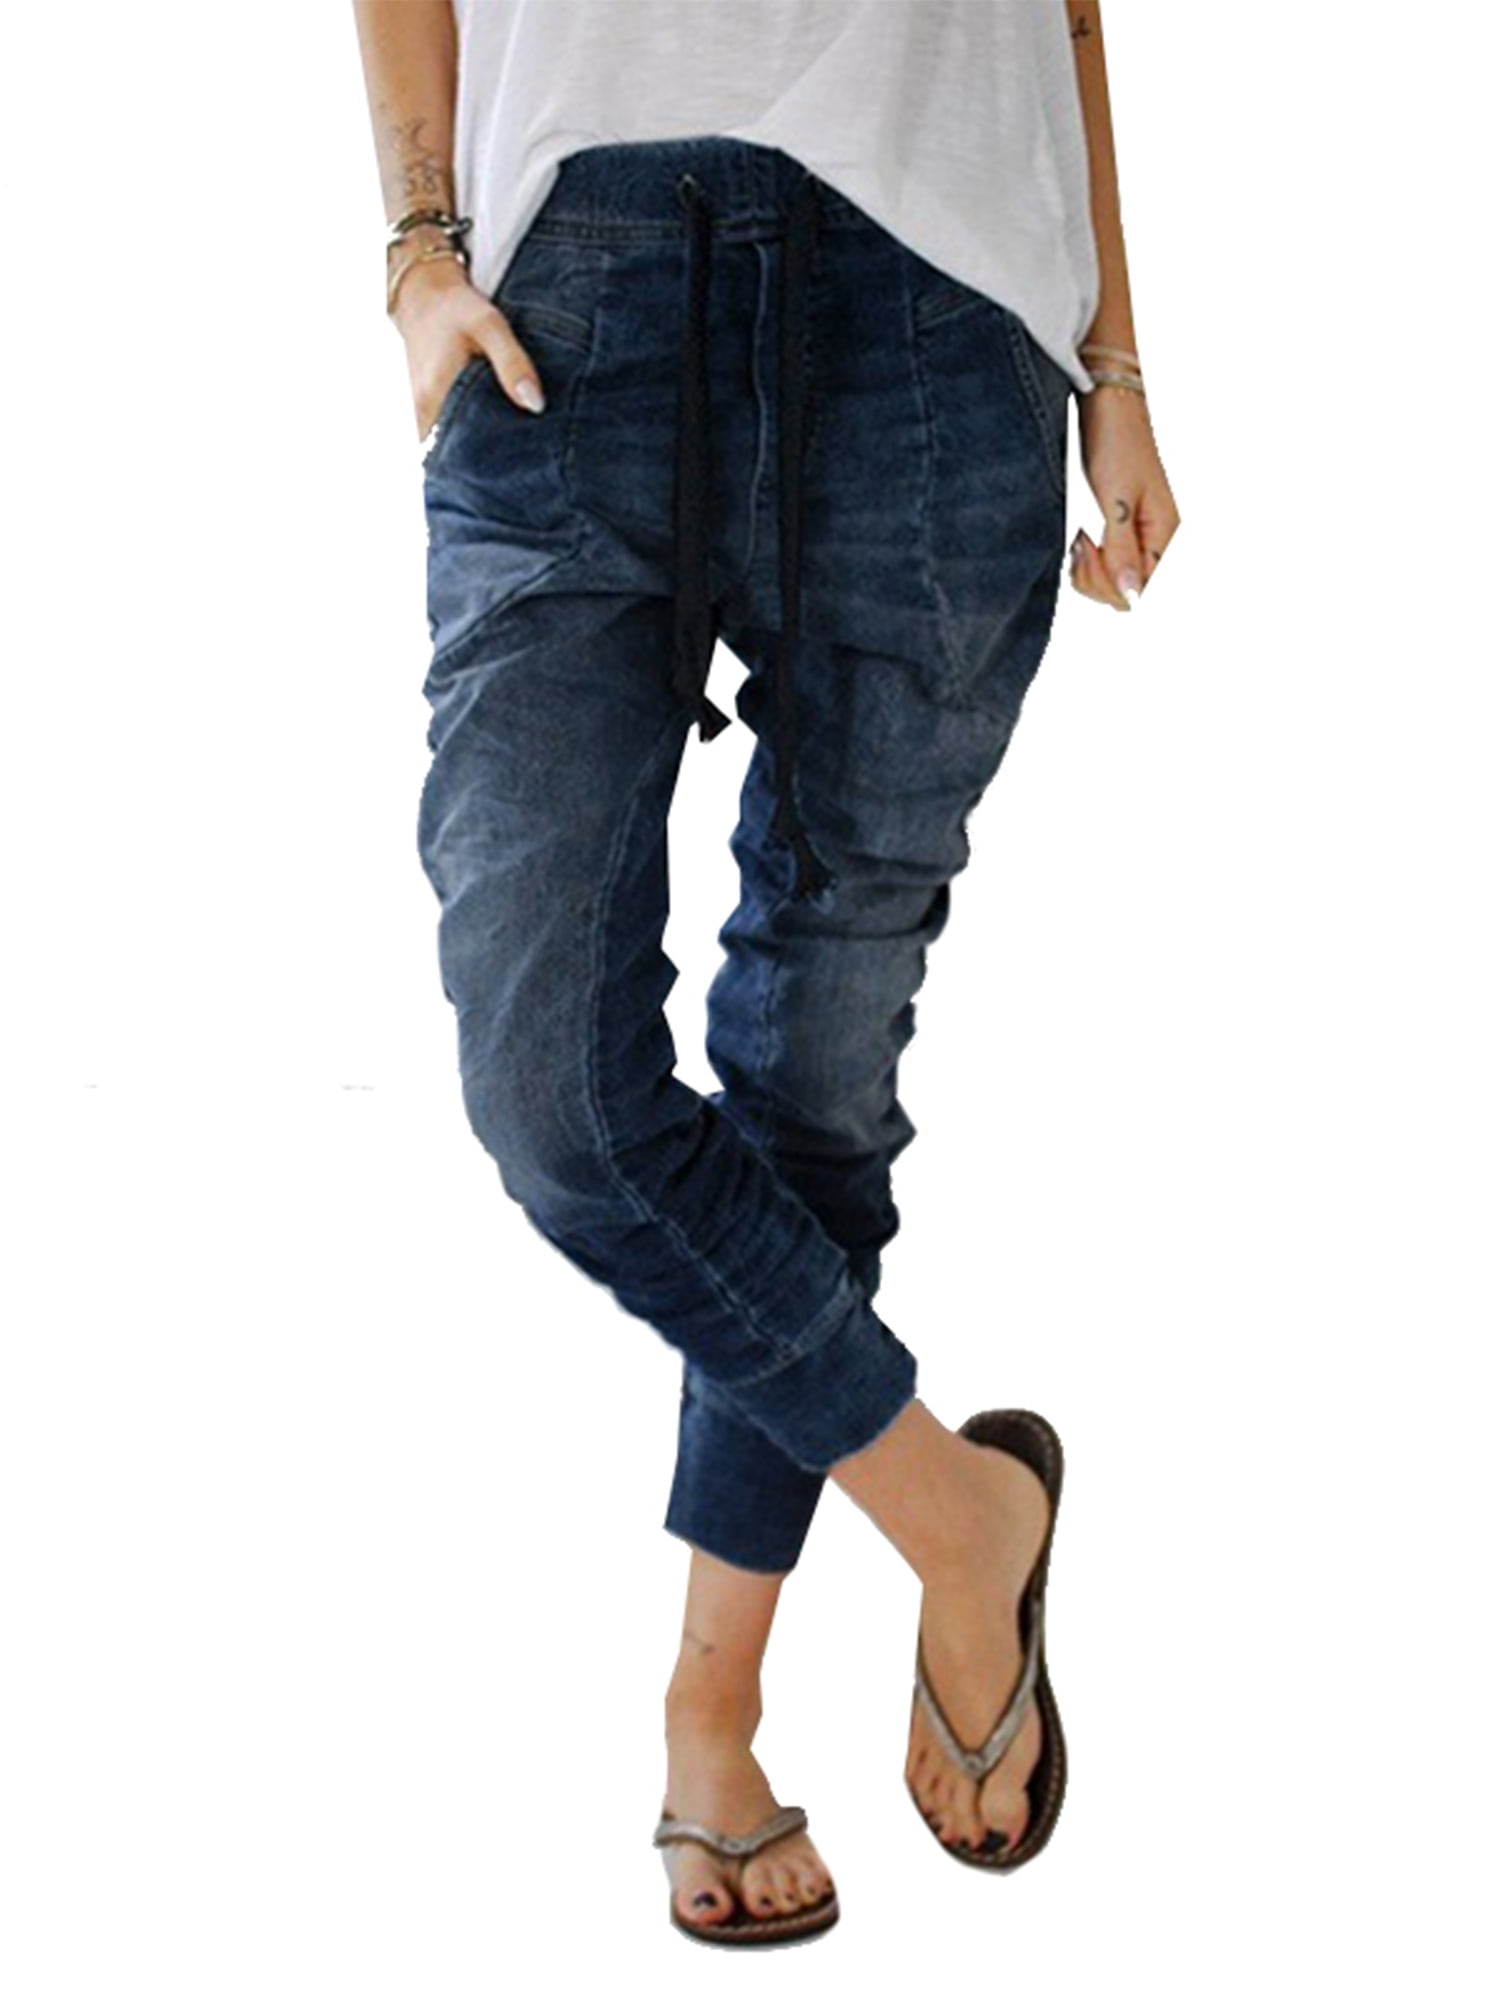 elastic waist jeans for women